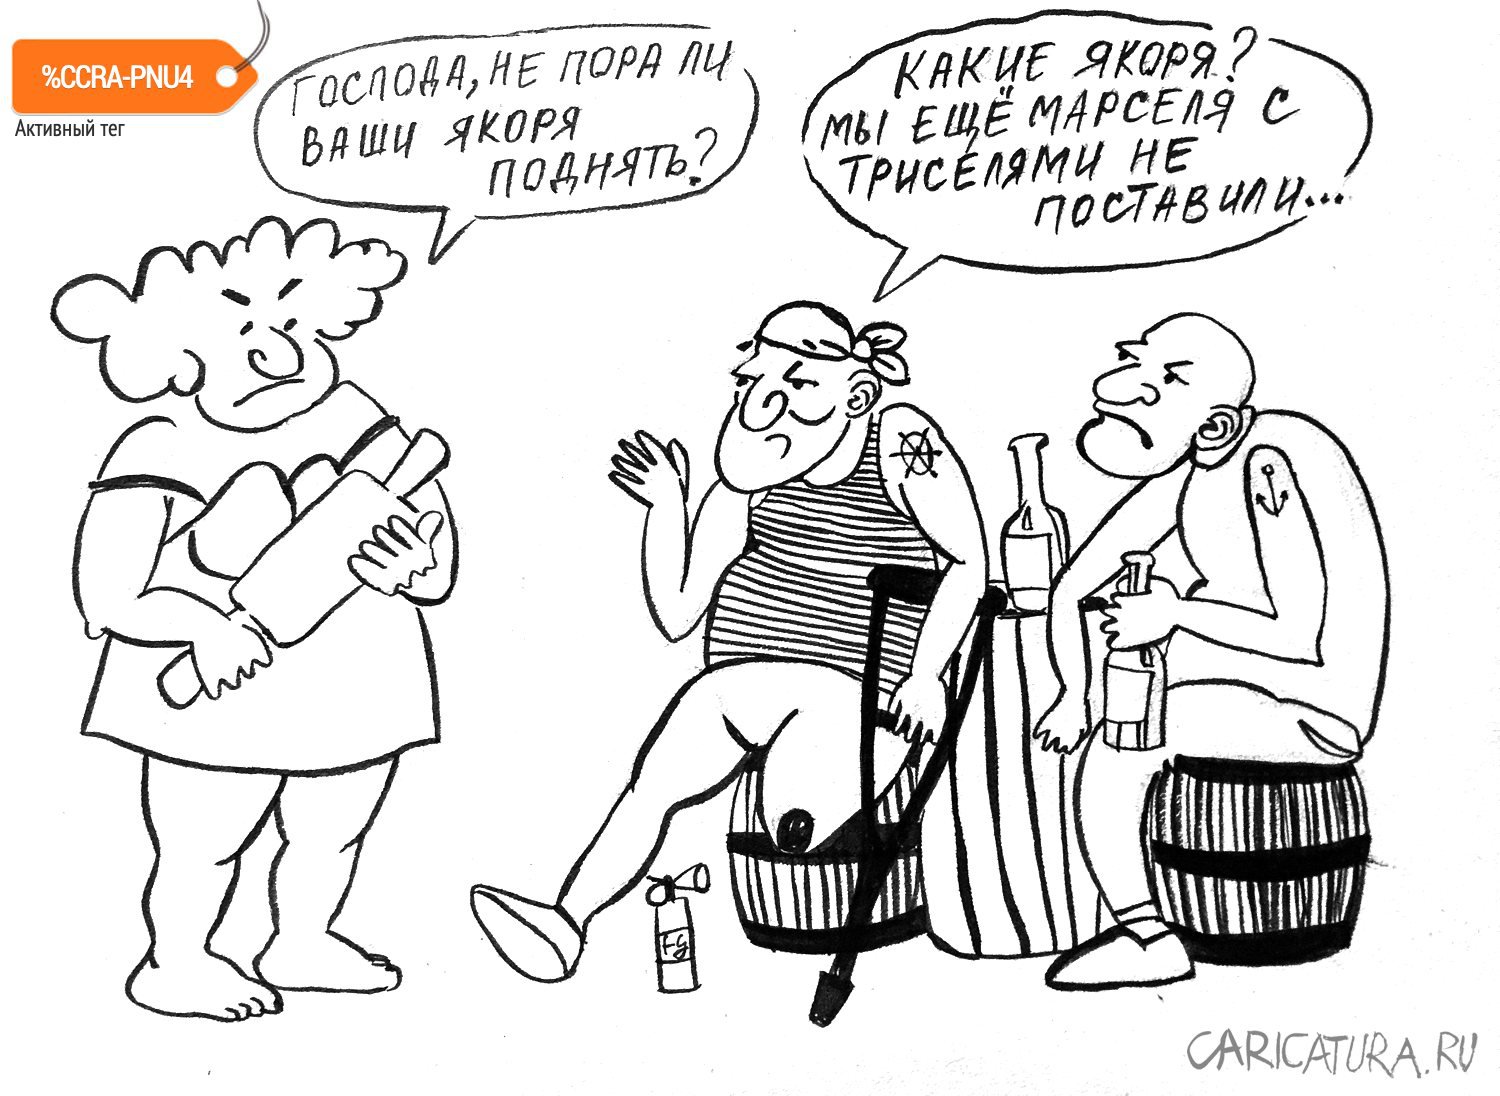 Карикатура "Поднять якоря!", Татьяна Ермакова